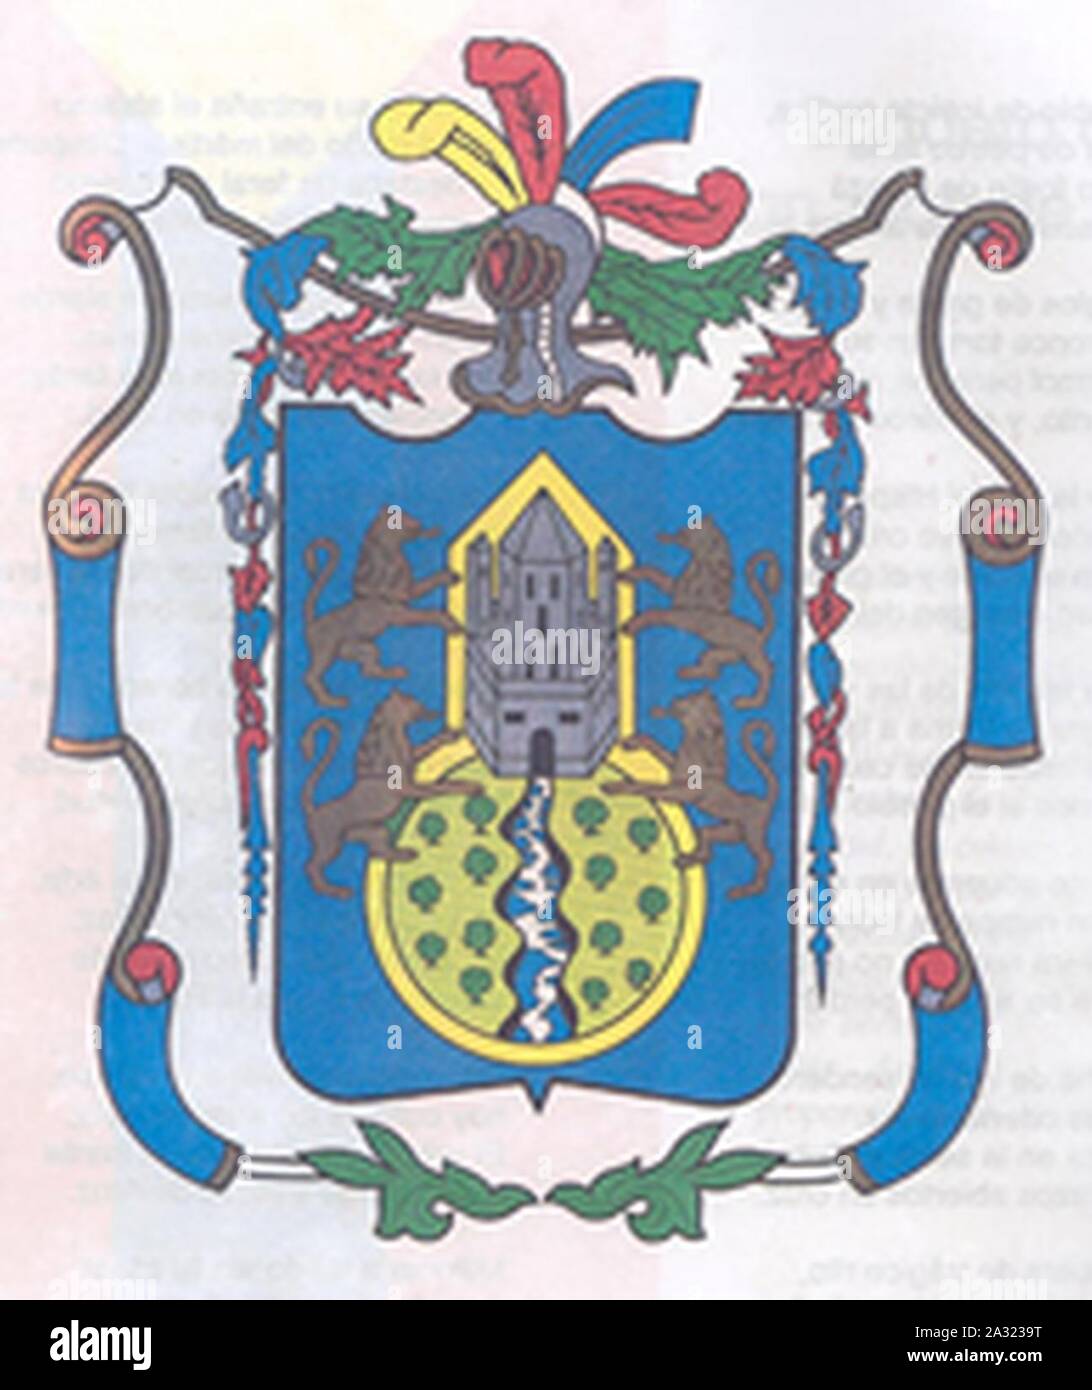 Escudo de Armas de San Juan de Pasto. Stock Photo